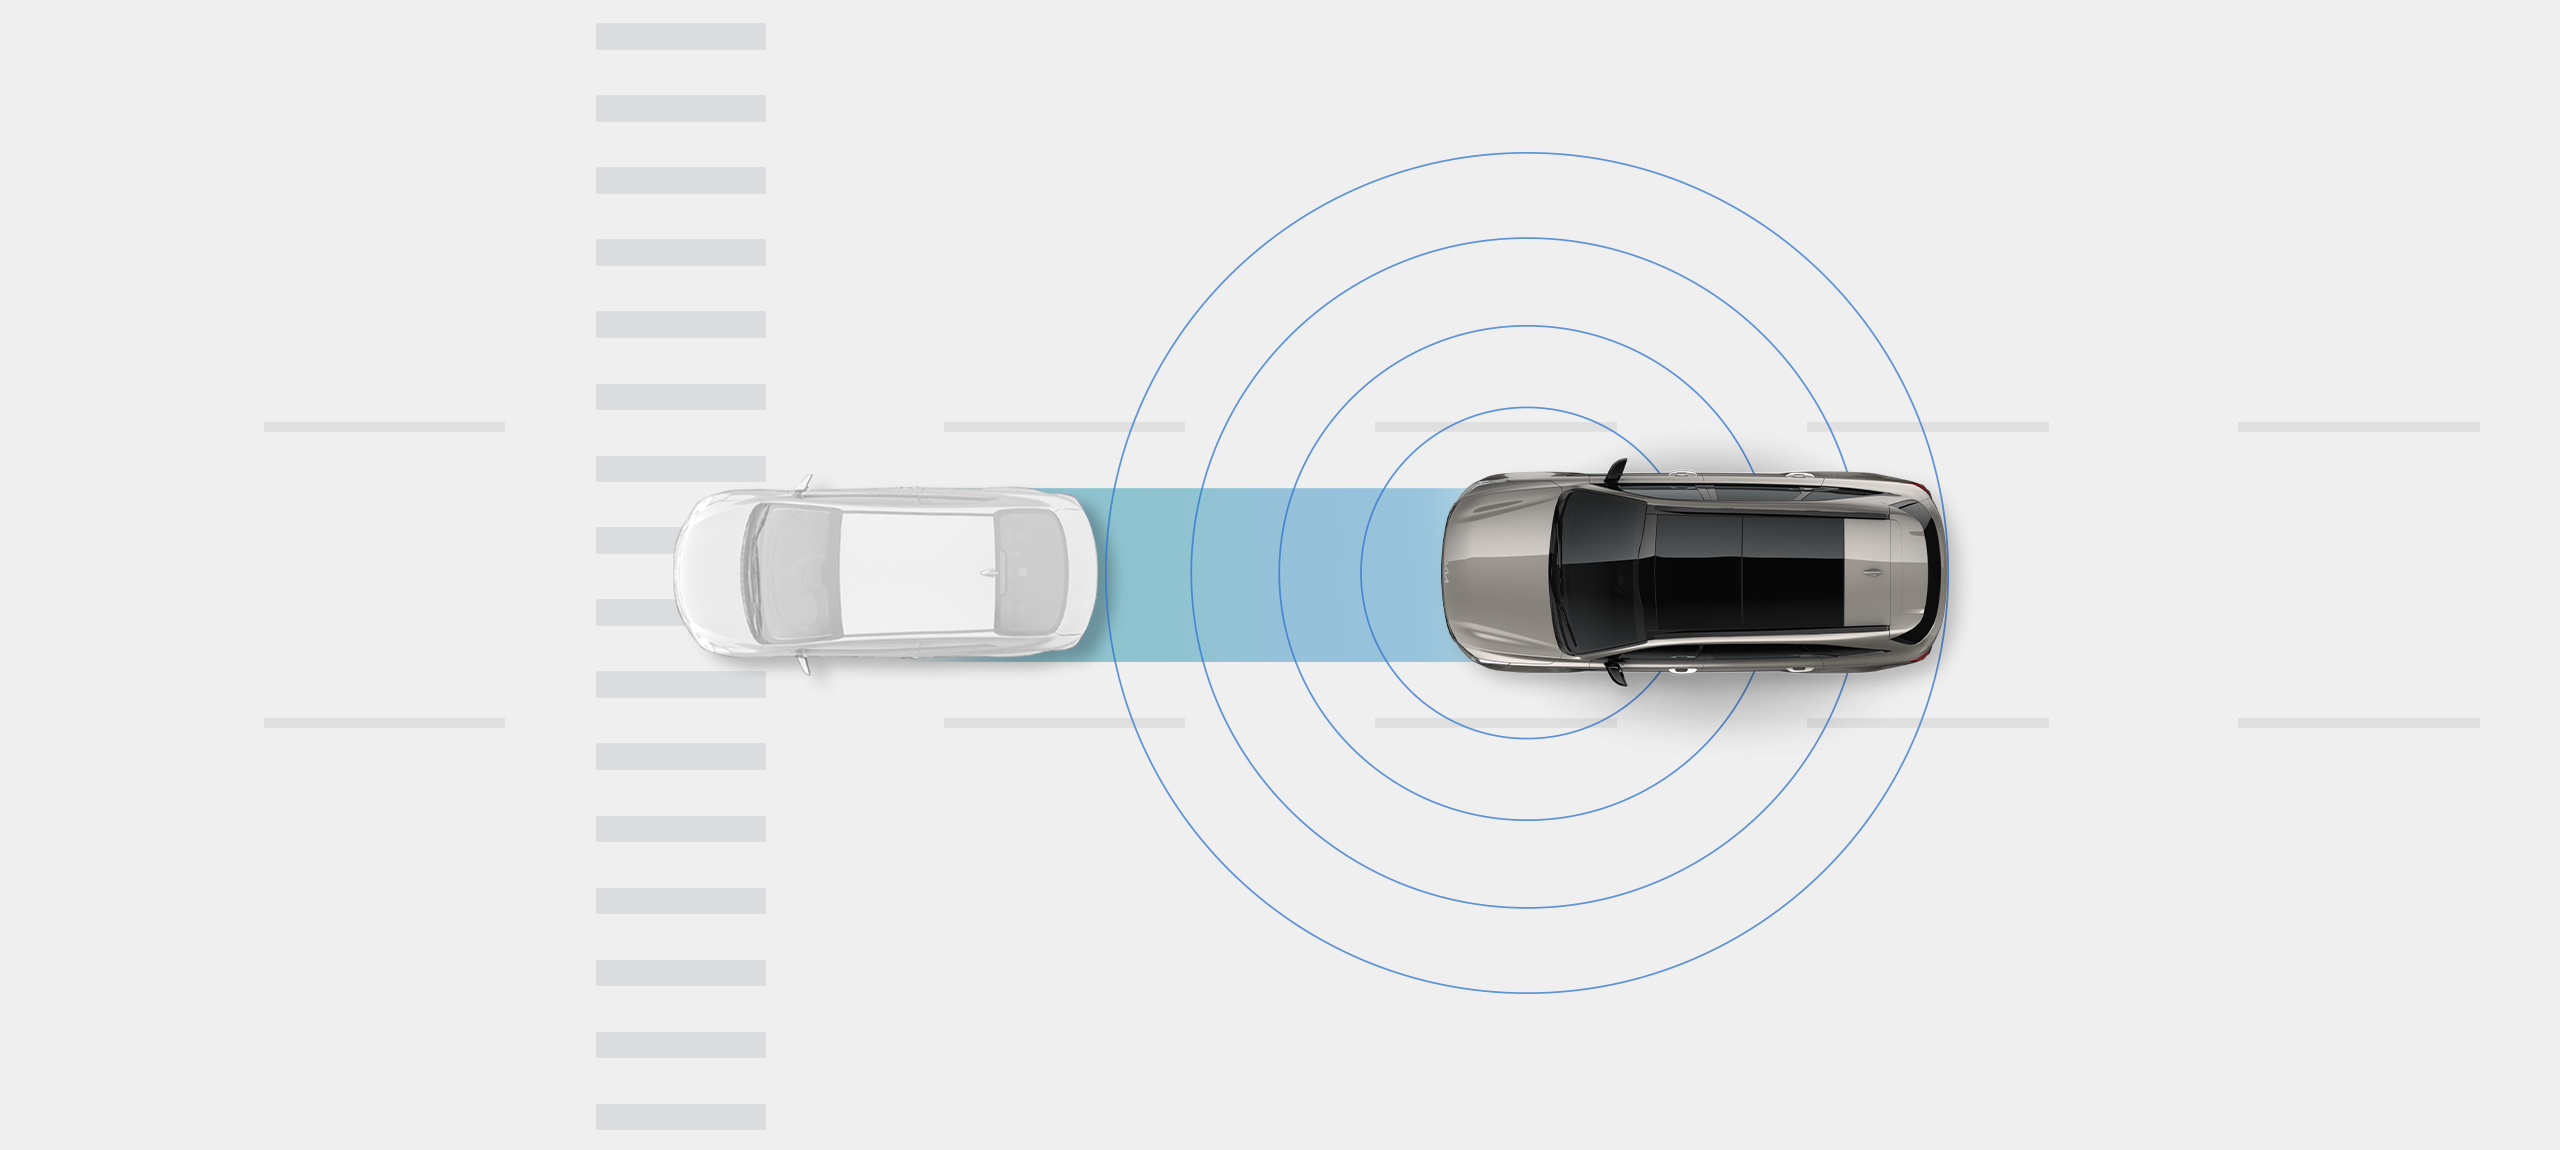 Vehículo Kia en una vista panorámica detrás de un automóvil genérico, con anillos a su alrededor para mostrar cómo el automóvil detecta una posible colisión